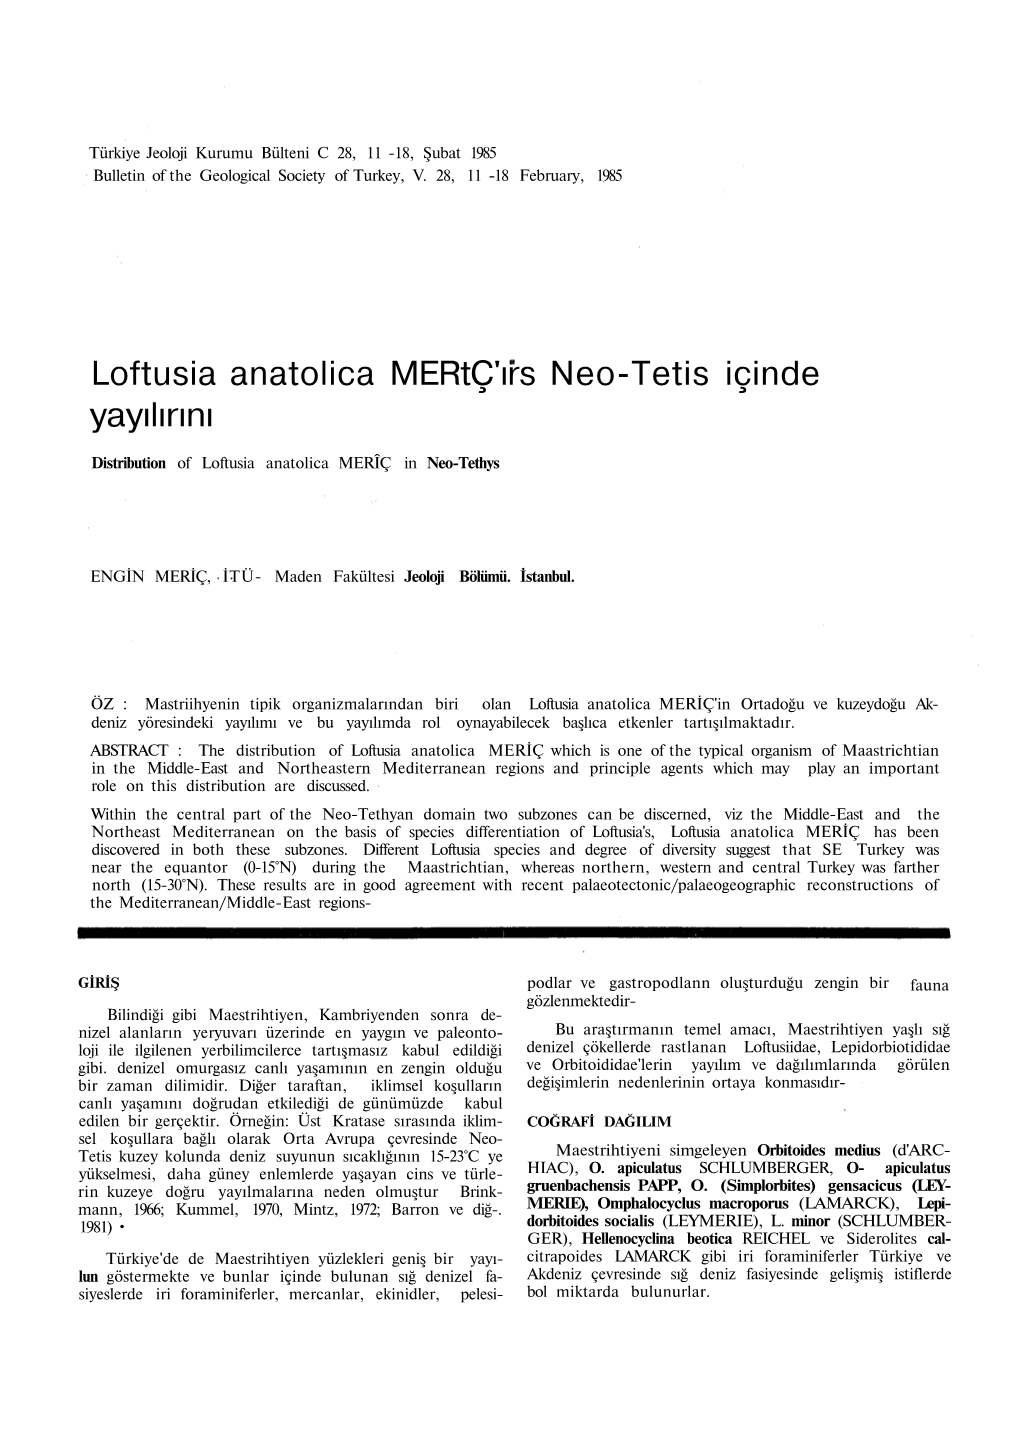 Loftusia Anatolica Mertç'ırs Neo-Tetis Içinde Yayılırını